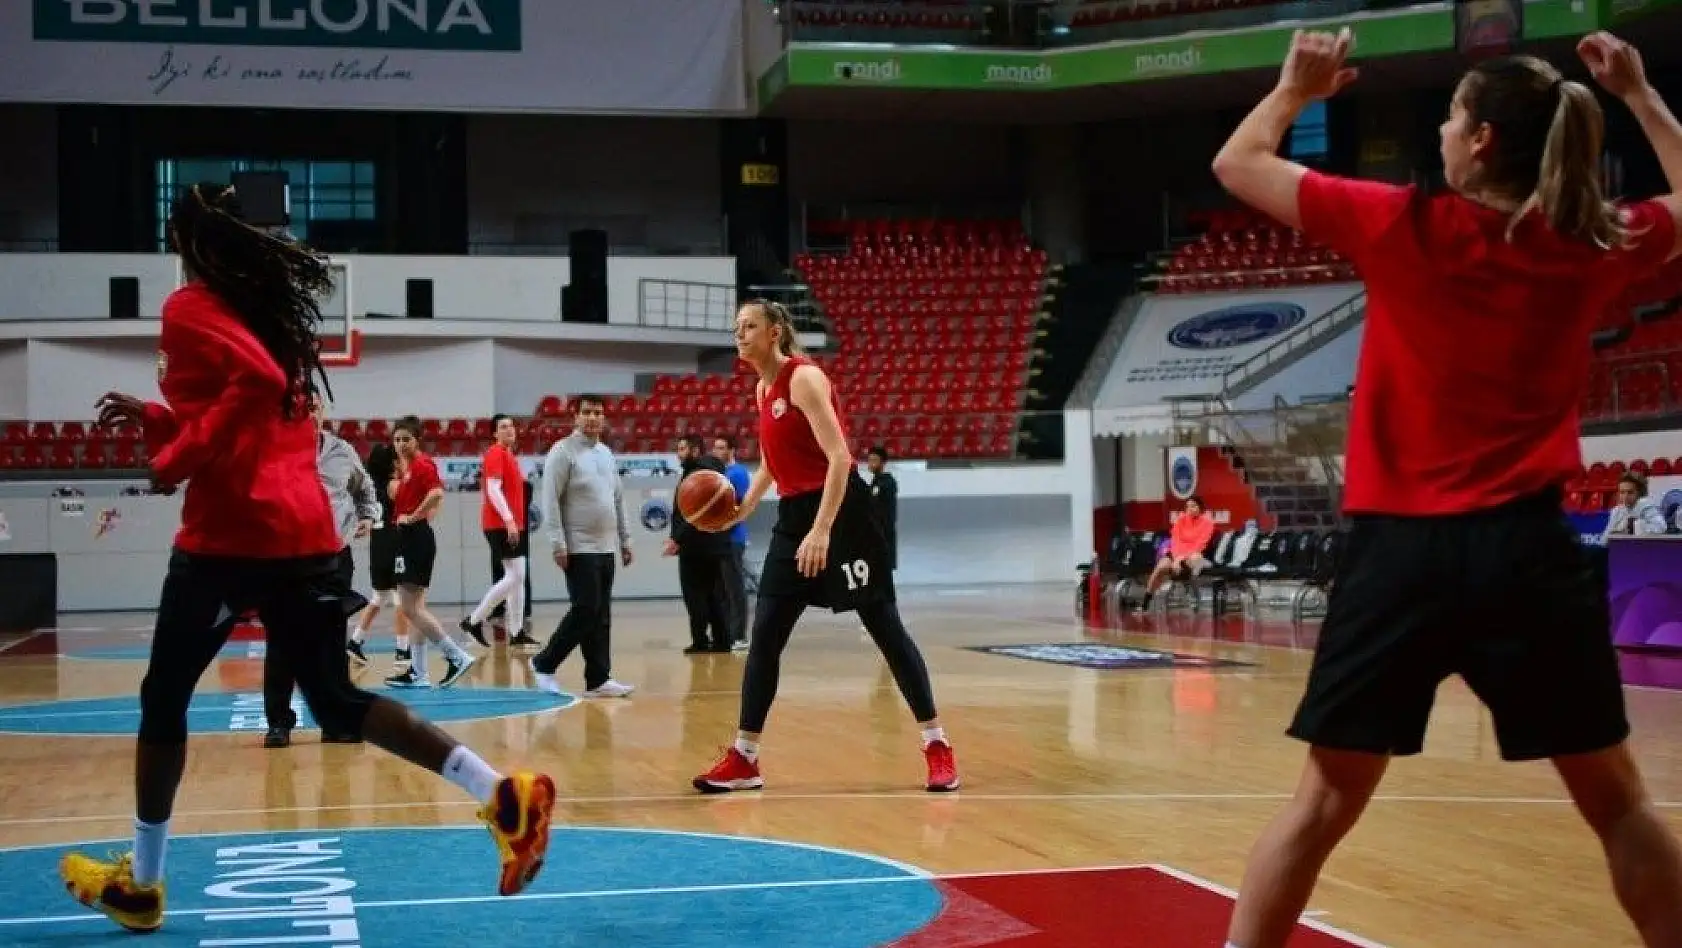 Bellona Kayseri Basketbol, Fenerbahçe'yi konuk edecek
